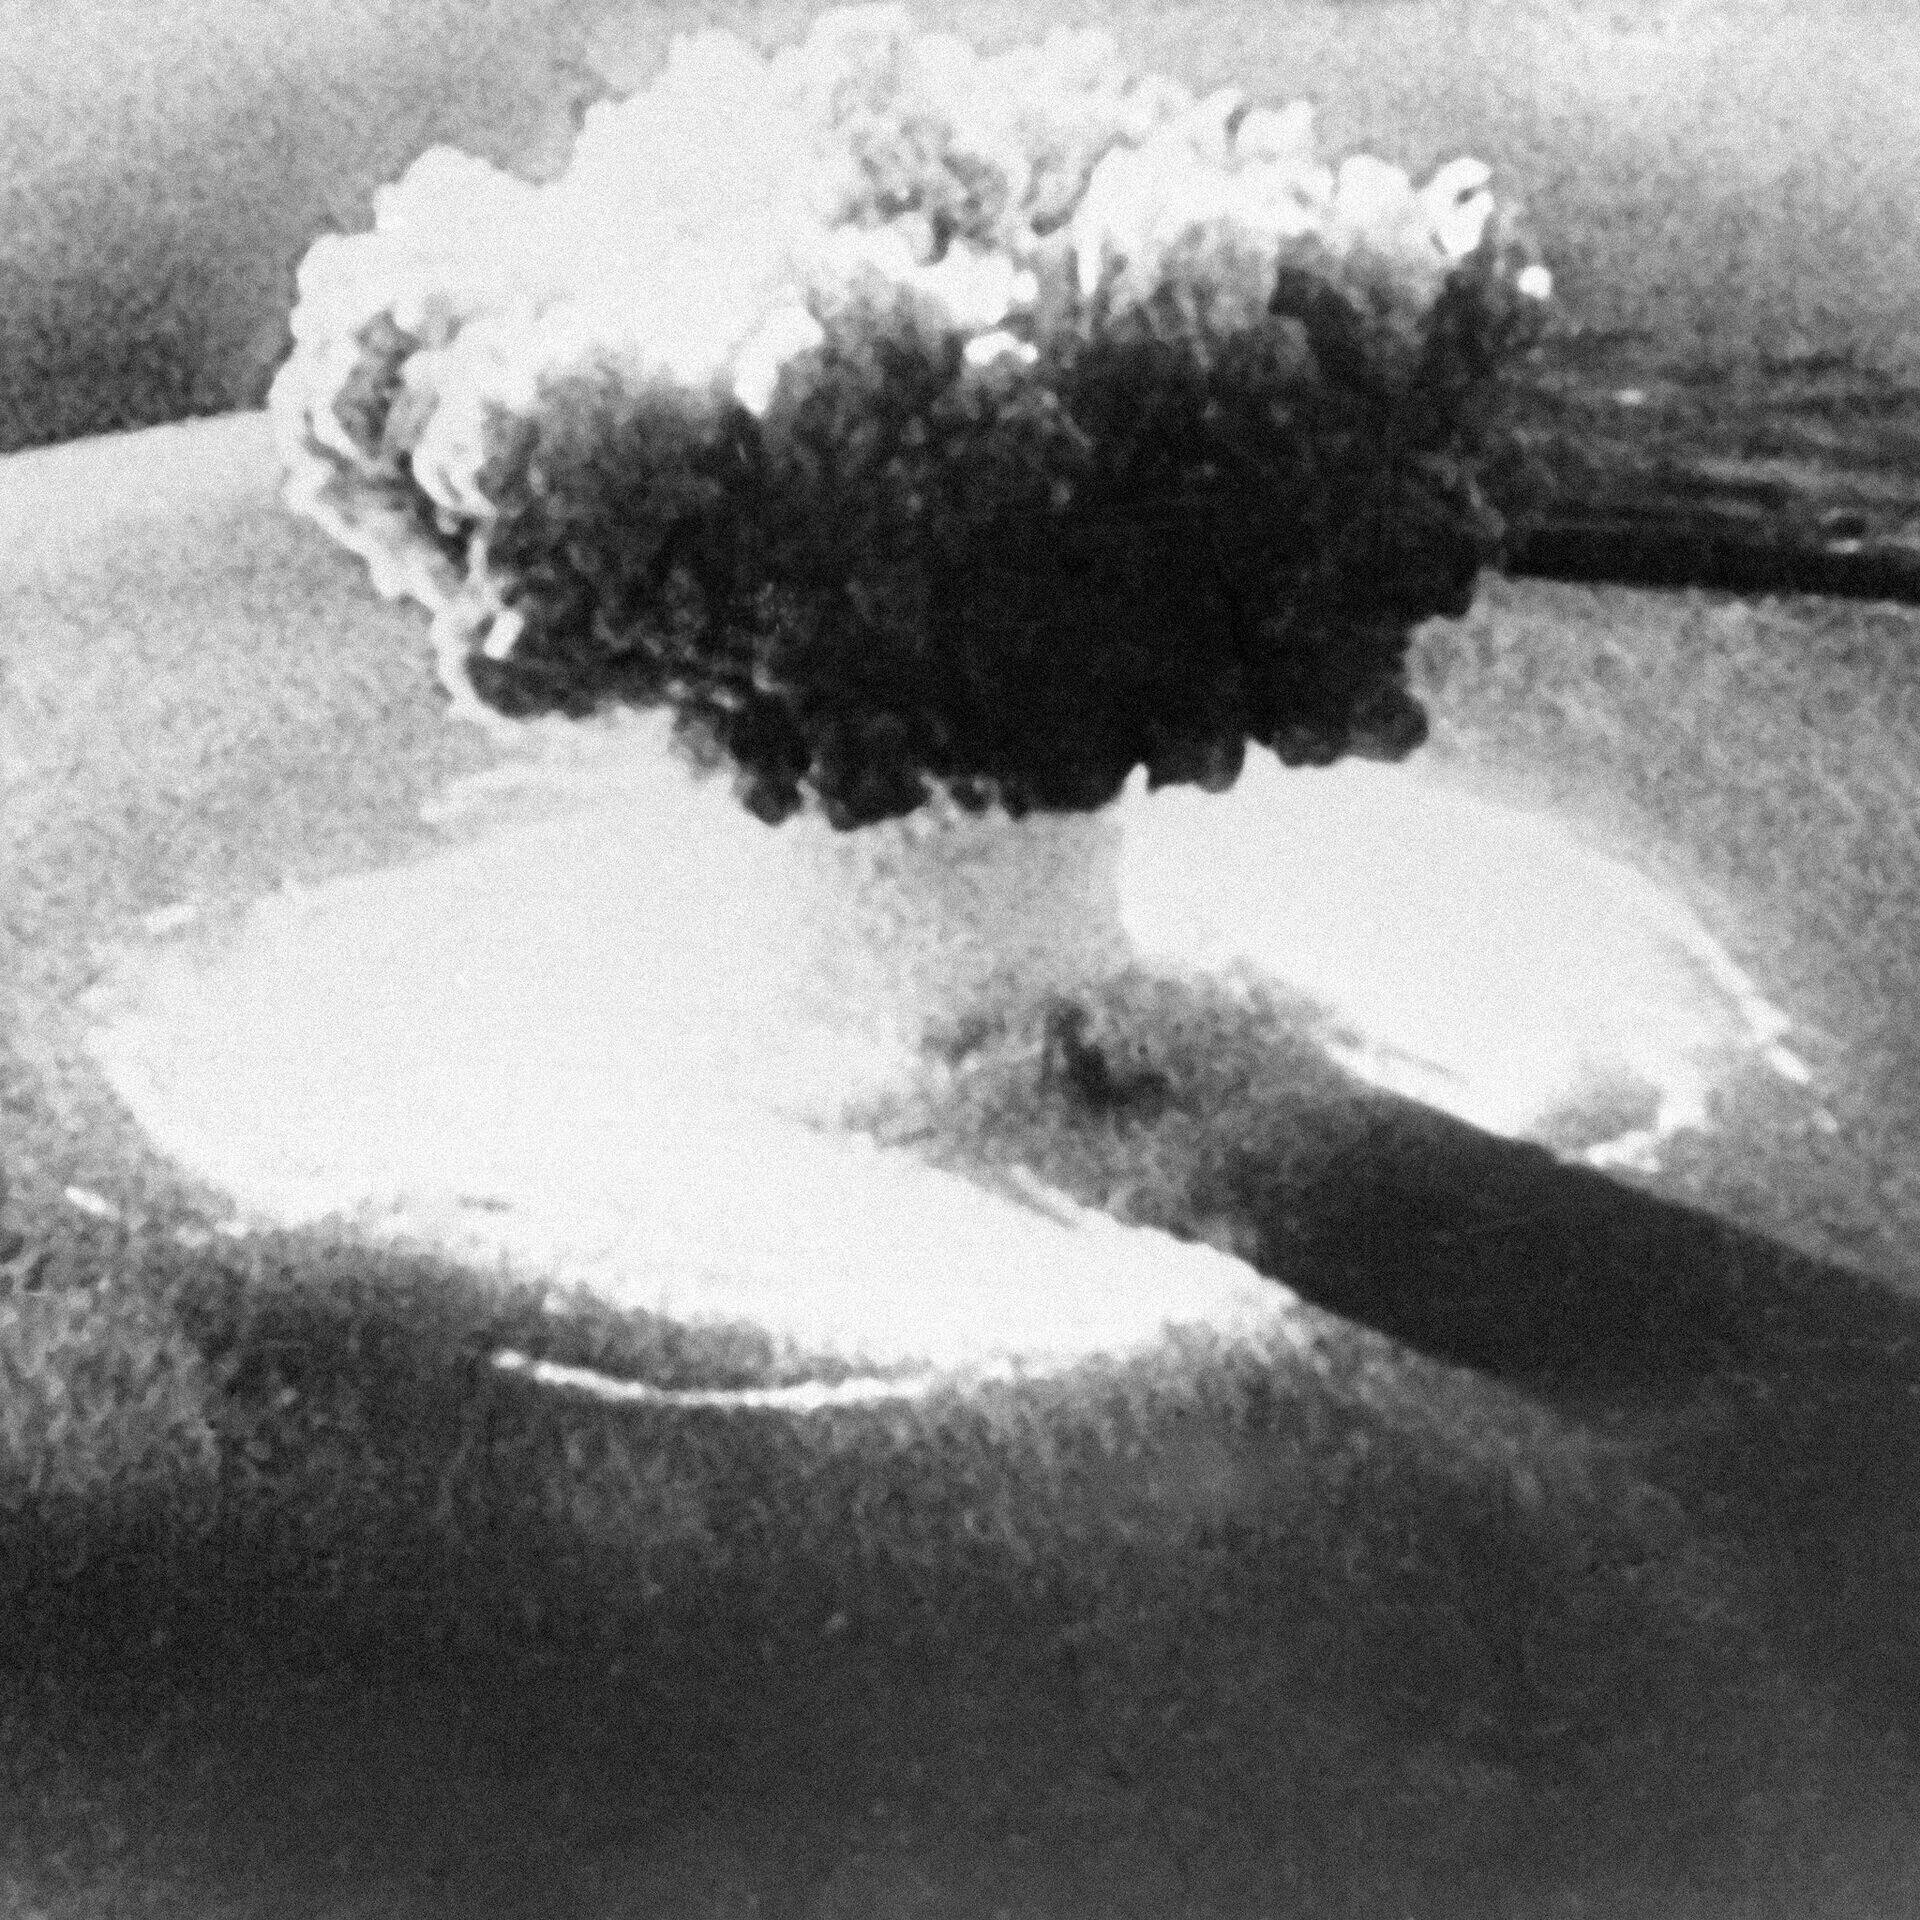 Водородная бомба (1952-1953). Новая земля ядерный полигон. Новая земля полигон ядерных испытаний. Взрыв первой атомной бомбы в СССР. Ядерная пятерка